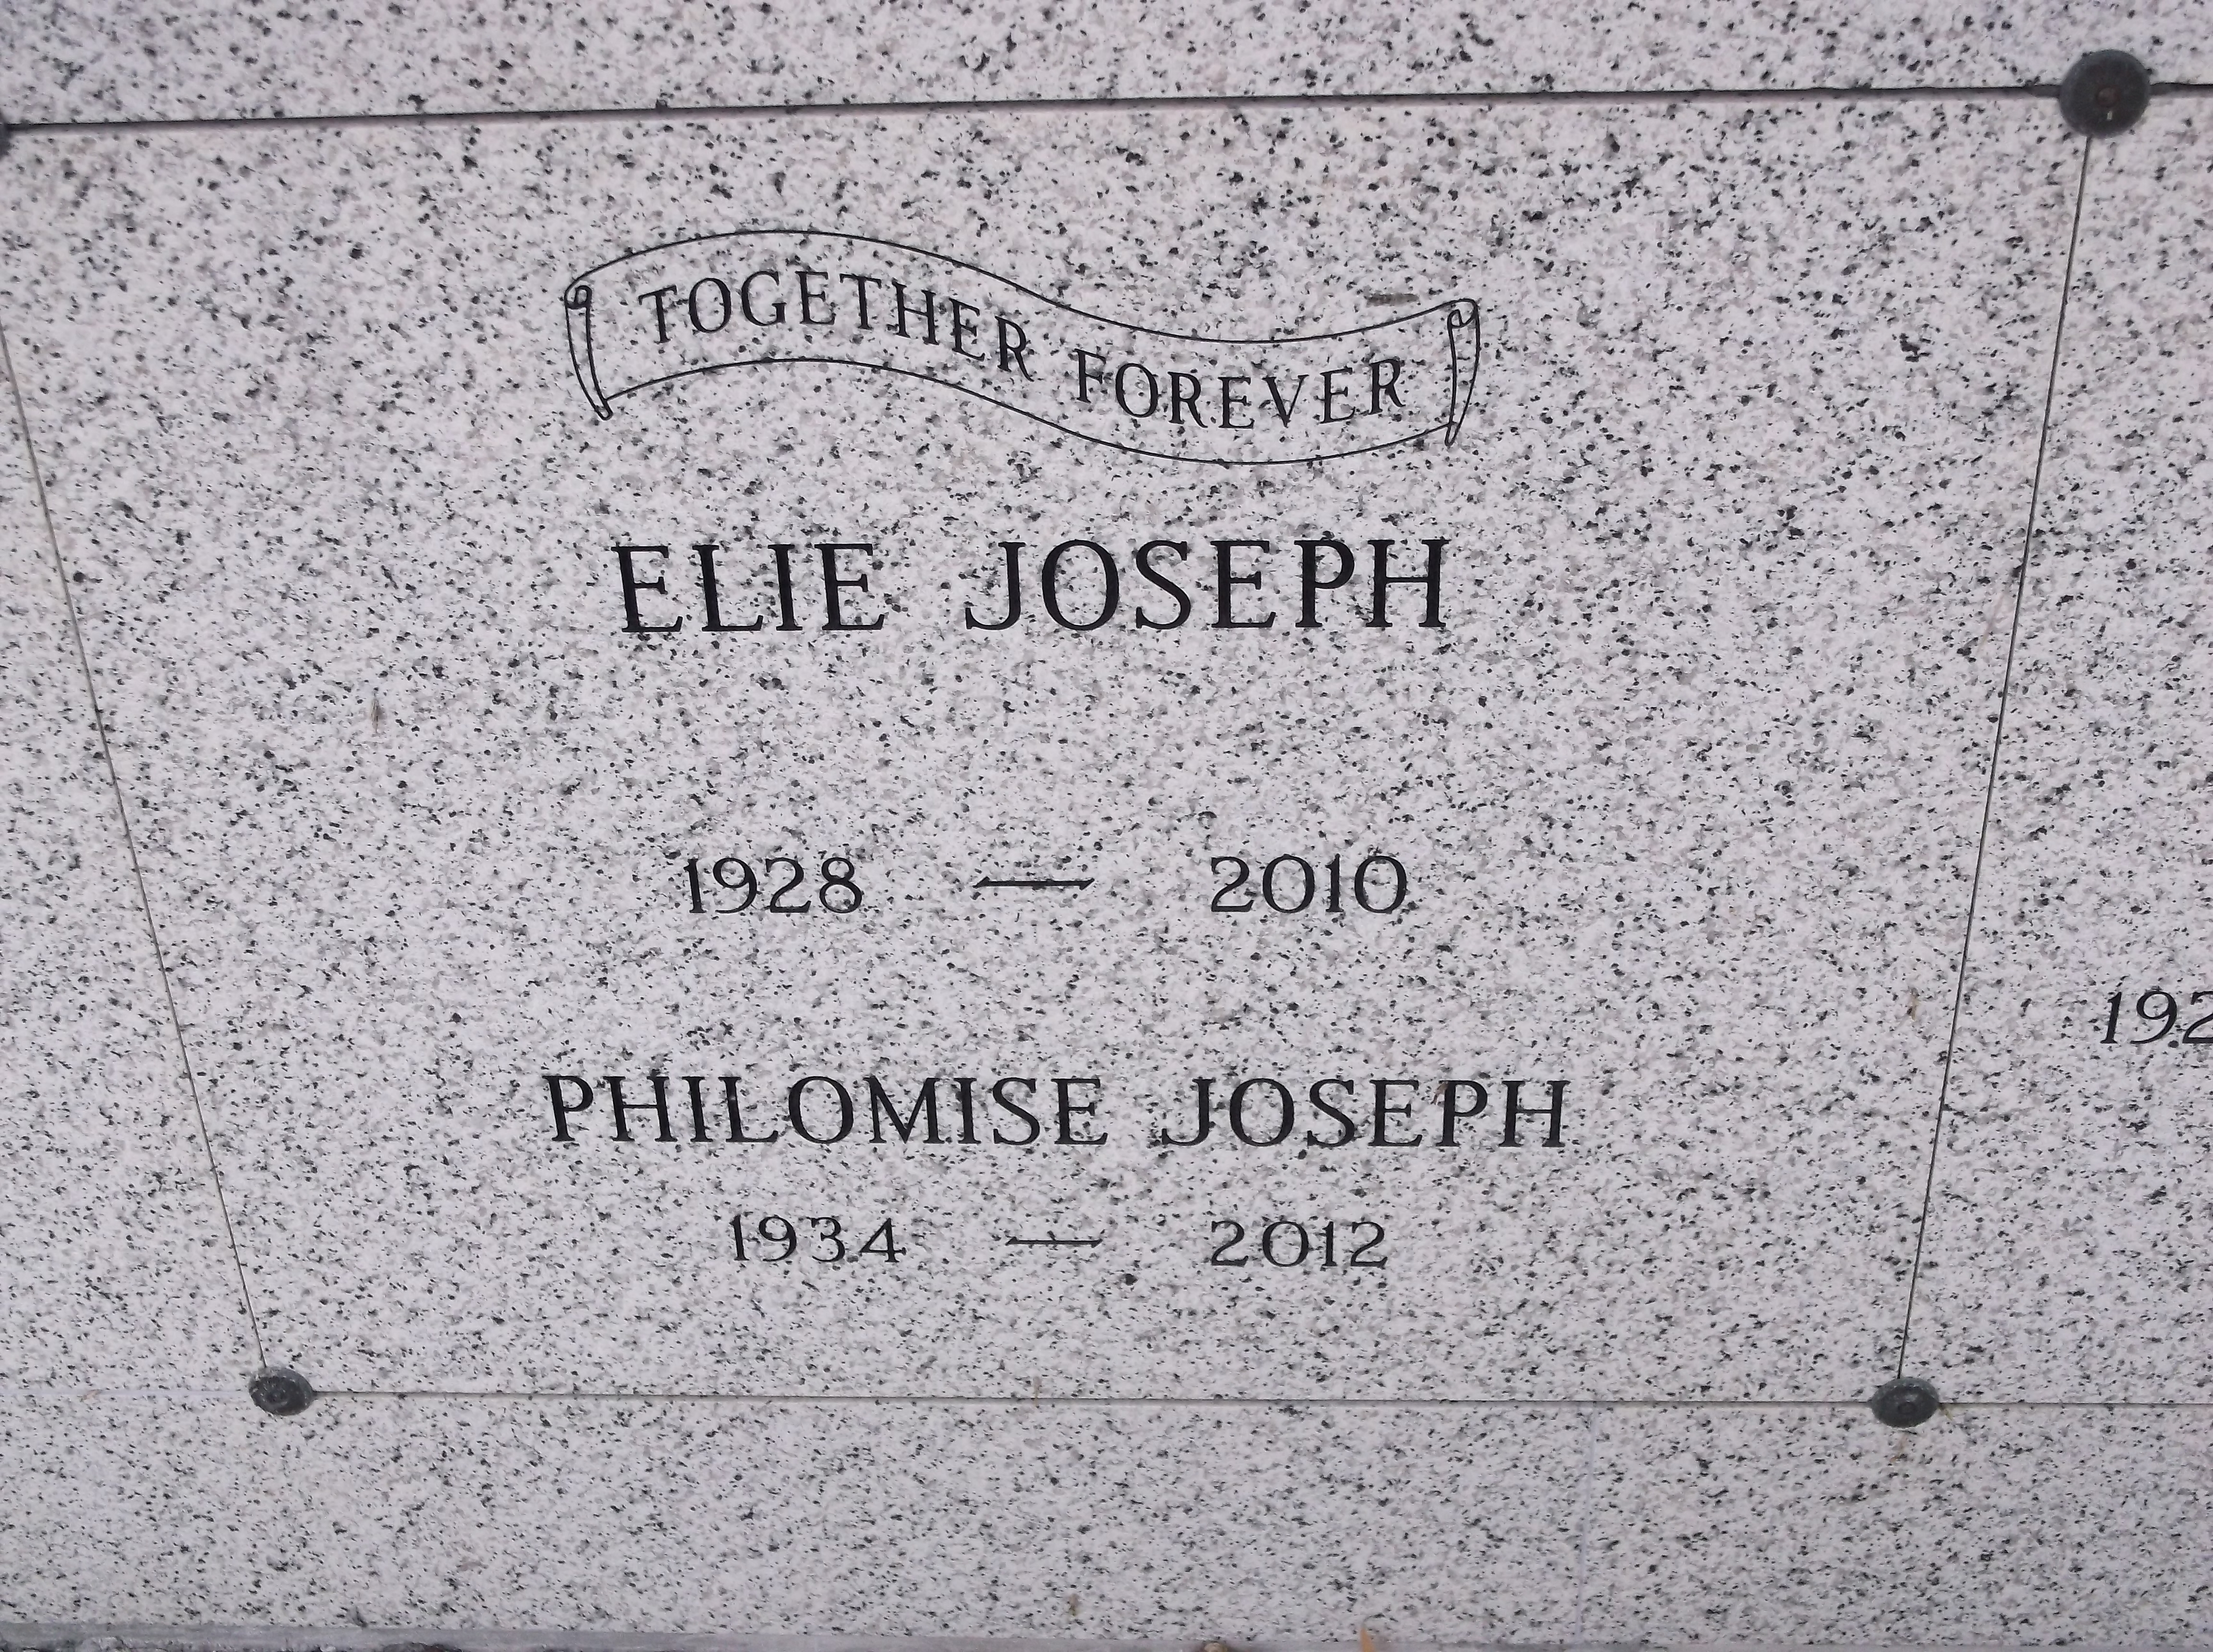 Elie Joseph